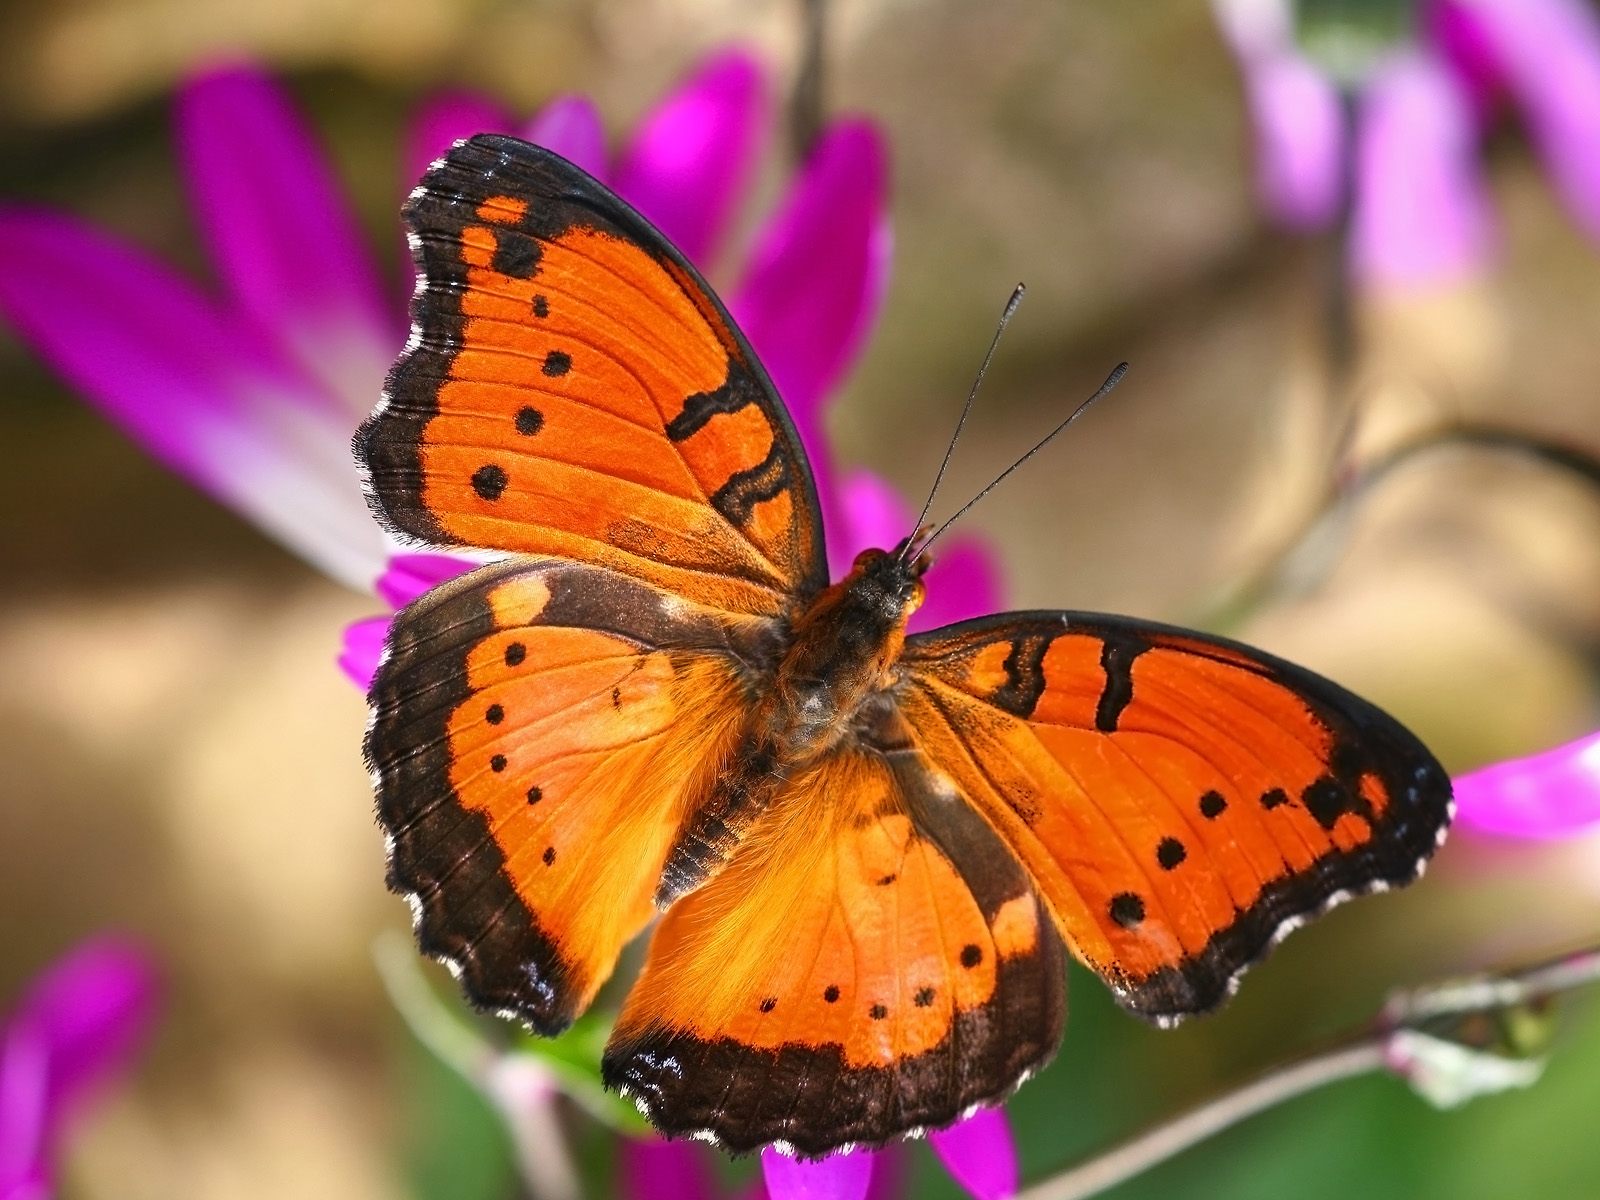 Descarga gratuita de fondo de pantalla para móvil de Animales, Insecto, Mariposa, Color Naranja).